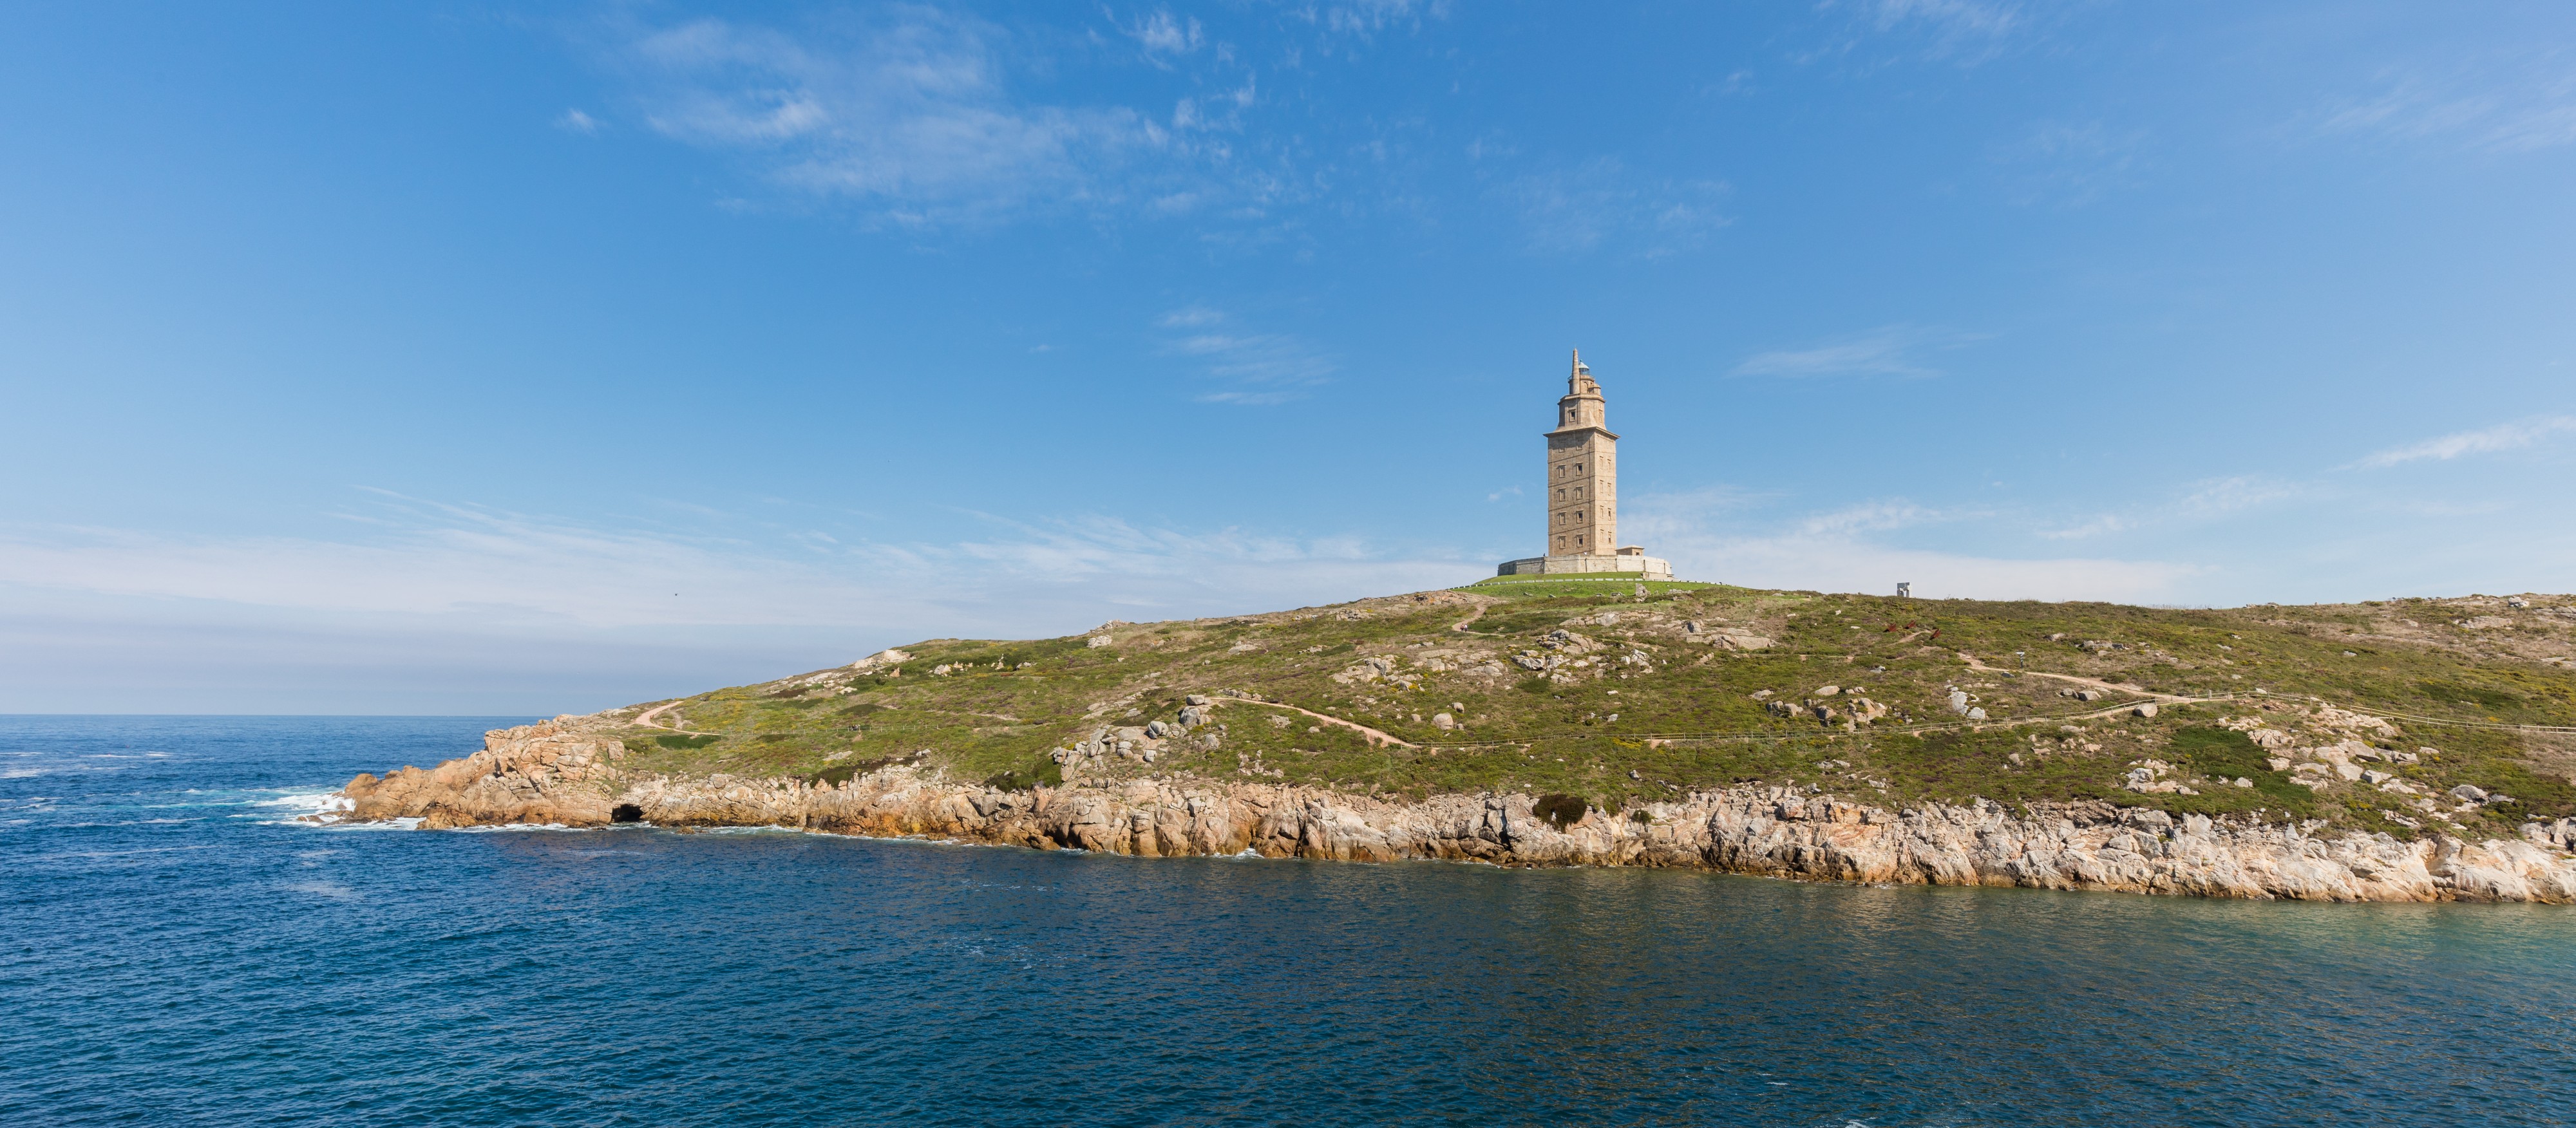 Torre de Hércules, La Coruña, España, 2015-09-24, DD 10